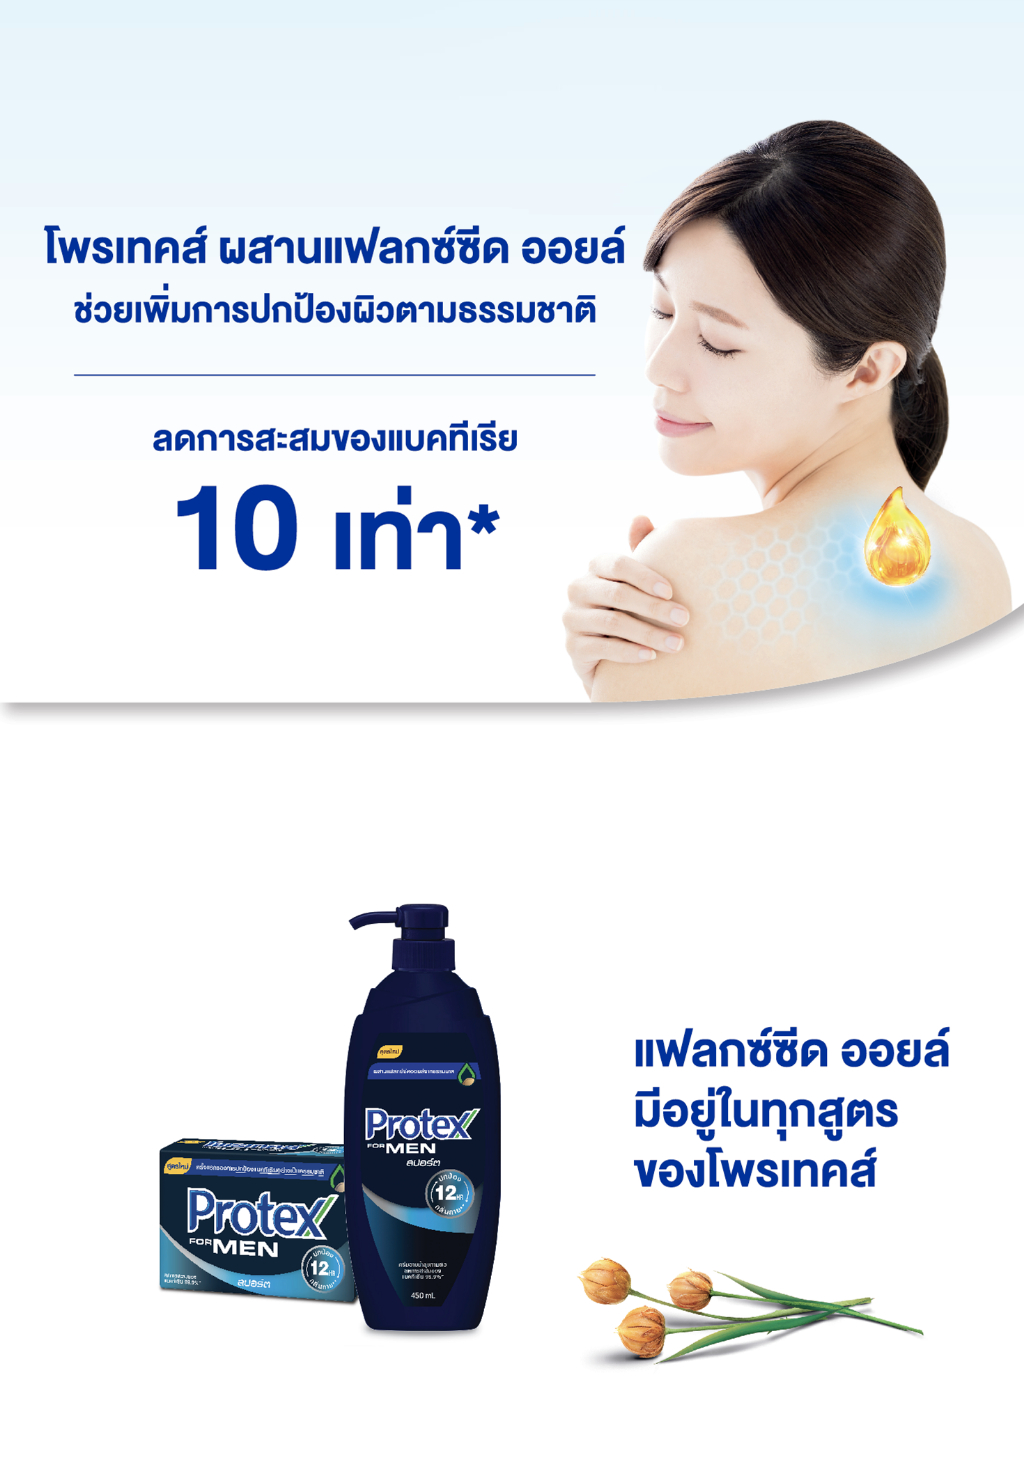 ลองดูภาพสินค้า Protex โพรเทคส์ ฟอร์เมน สปอร์ต 450 มล. ขวดปั๊ม รวม 4 ขวด ให้ความรู้สึกสะอาดสดชื่น (ครีมอาบน้ำ) Protex For Men Sport Shower Cream 450 ml Pump x4